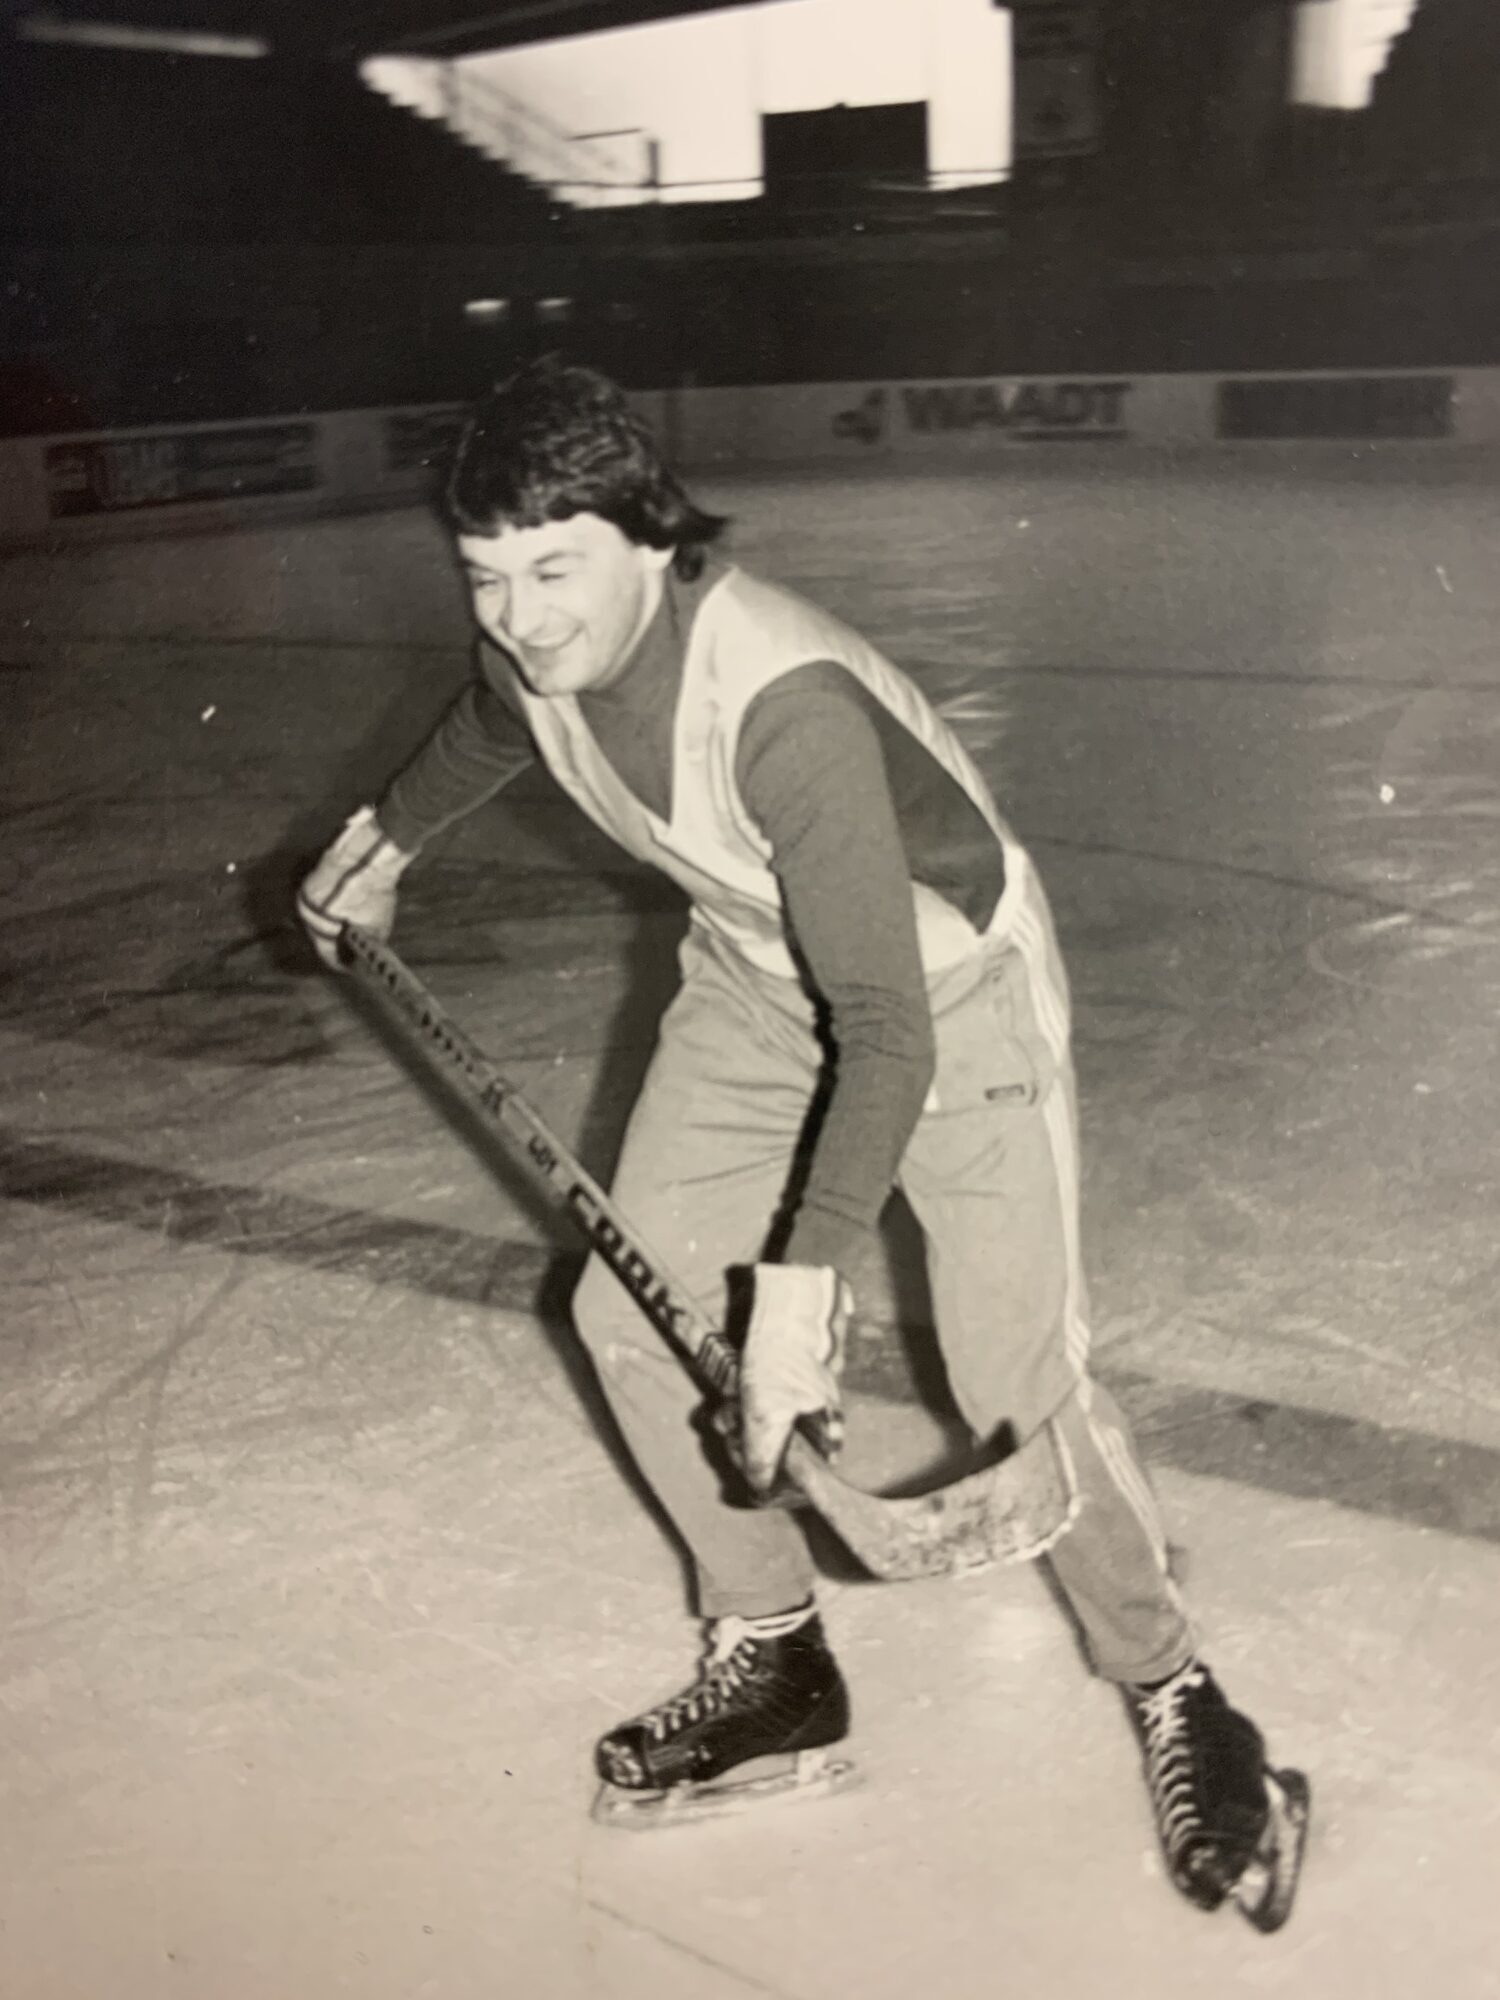 Zvonimir Peter 1981 als damals 27-jähriger auf dem Eis im Stadion Obersee